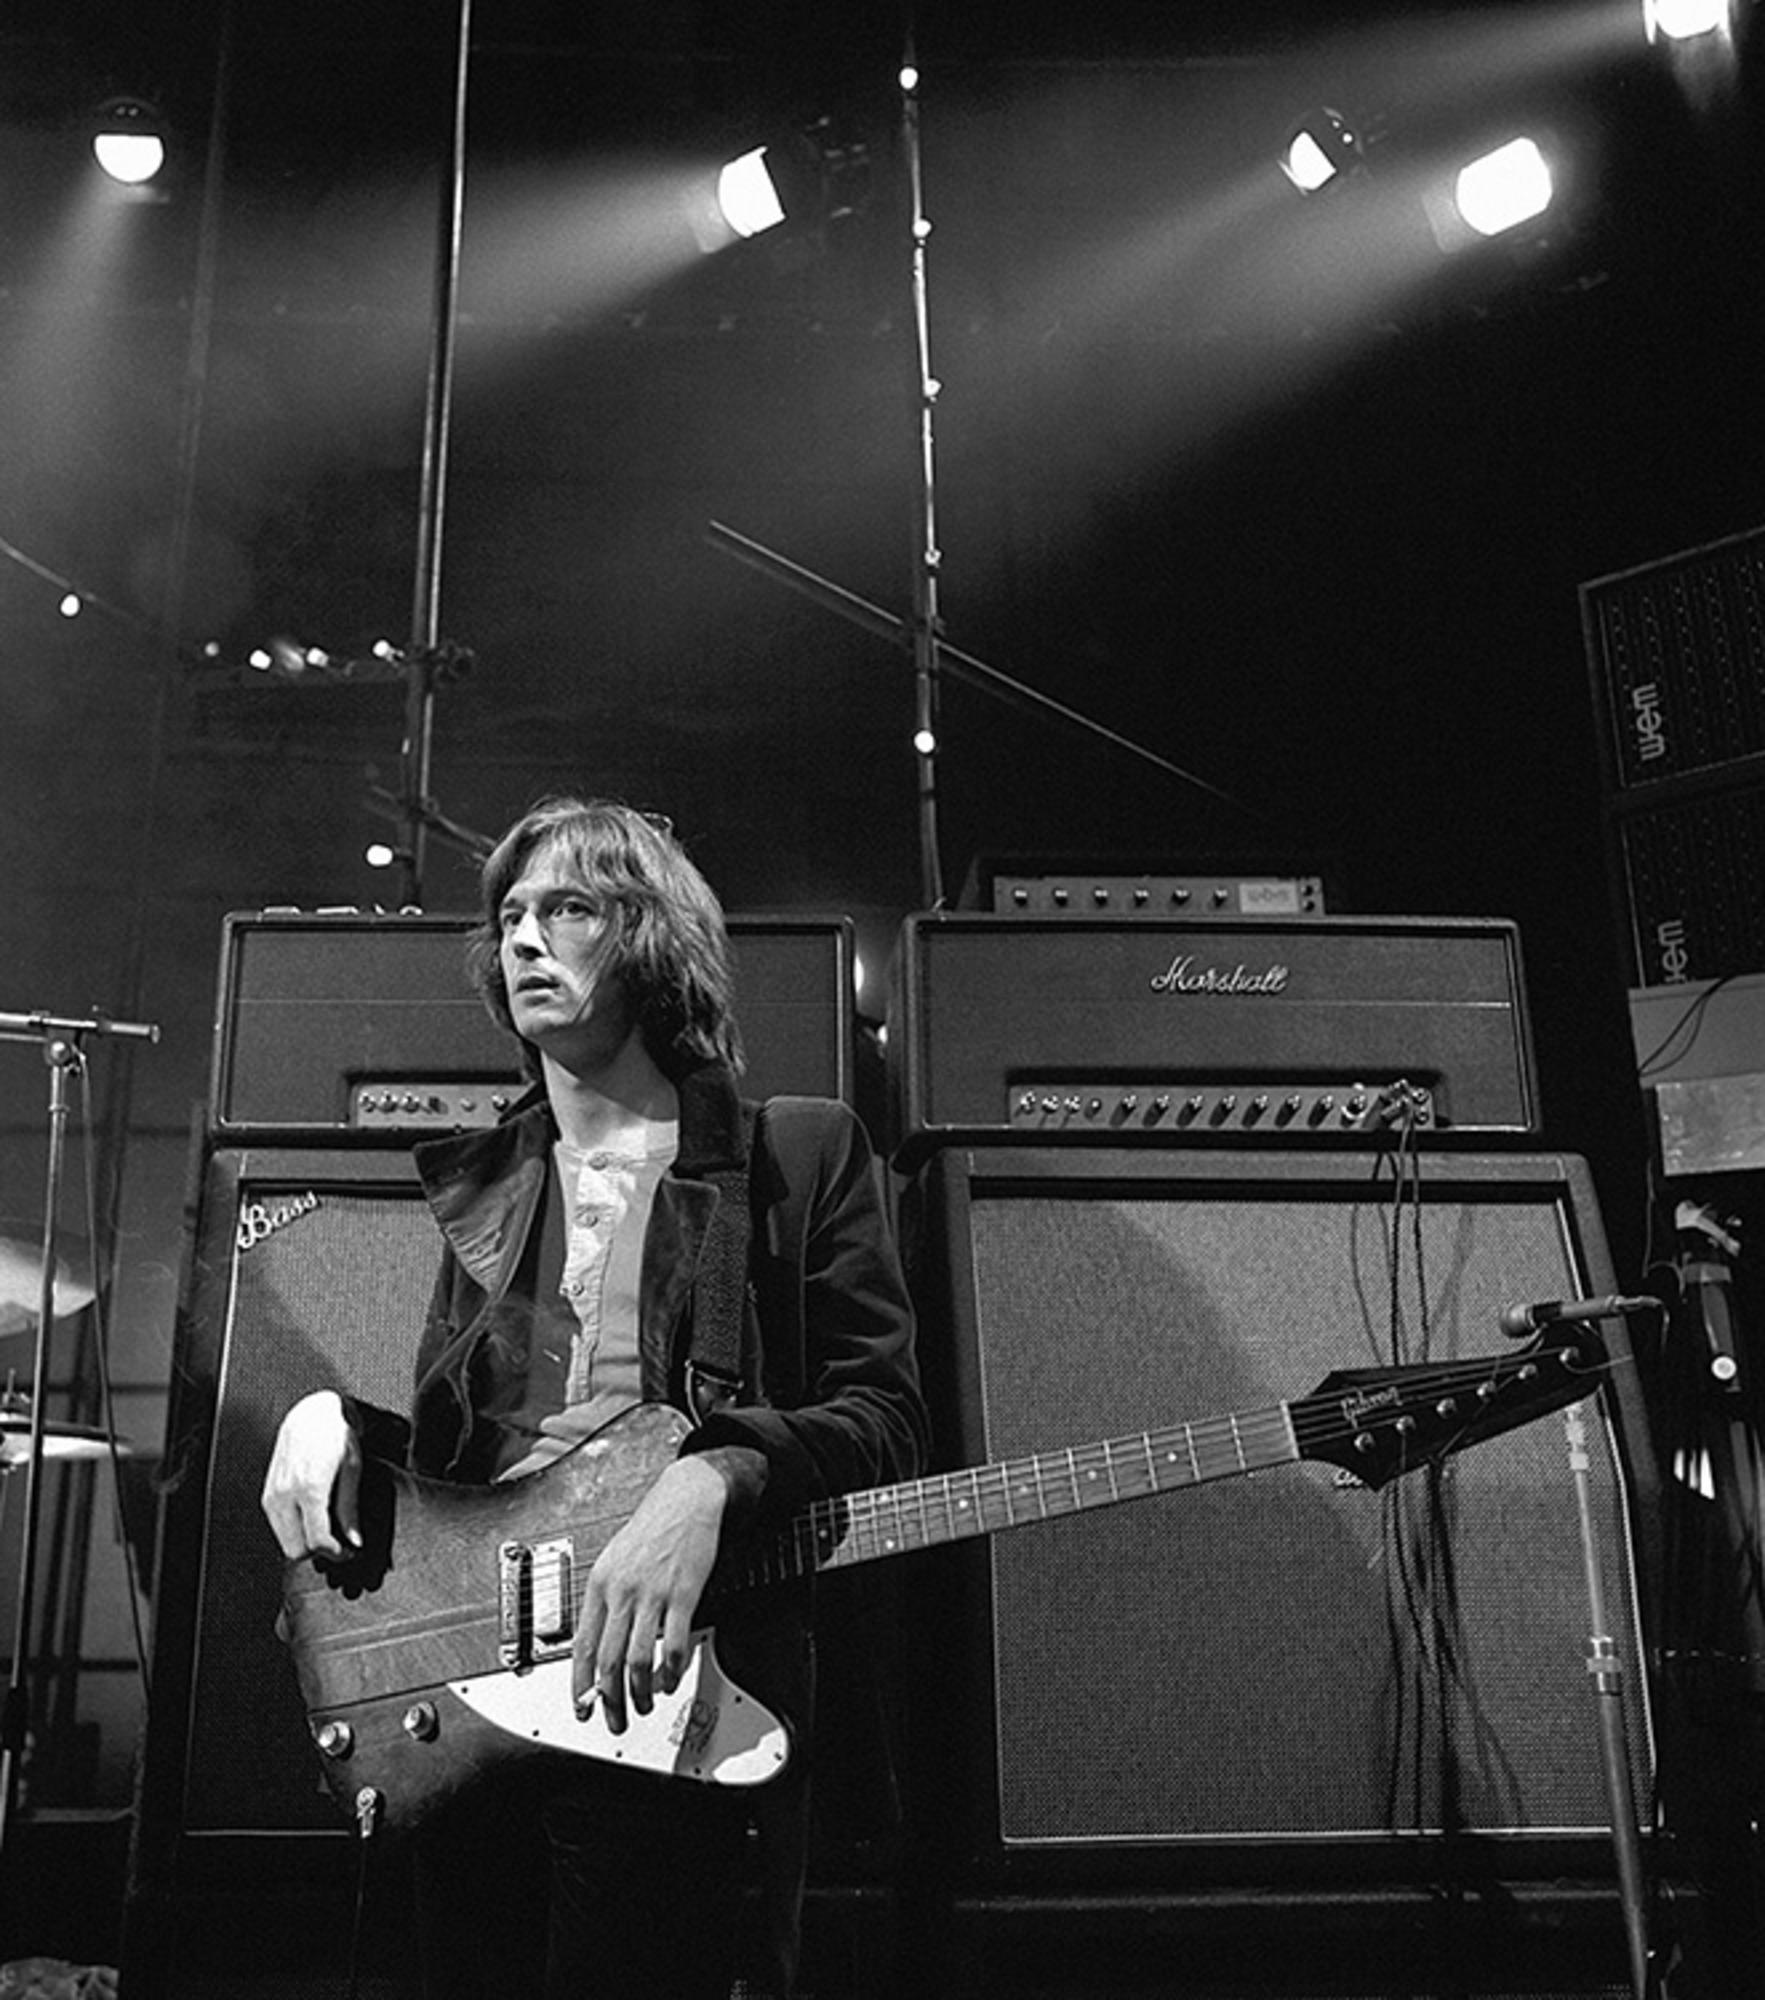 Gelatine-Silber, signiert und nummeriert

Eric Clapton, fotografiert in London, 1969.

Verfügbare Größen:
16" x 20" Auflage von 50
20" x 24" Auflage von 50
30" x 40" Auflage von 25
50" x 53" Auflage von 24 Stück

Dieses Foto wird nach